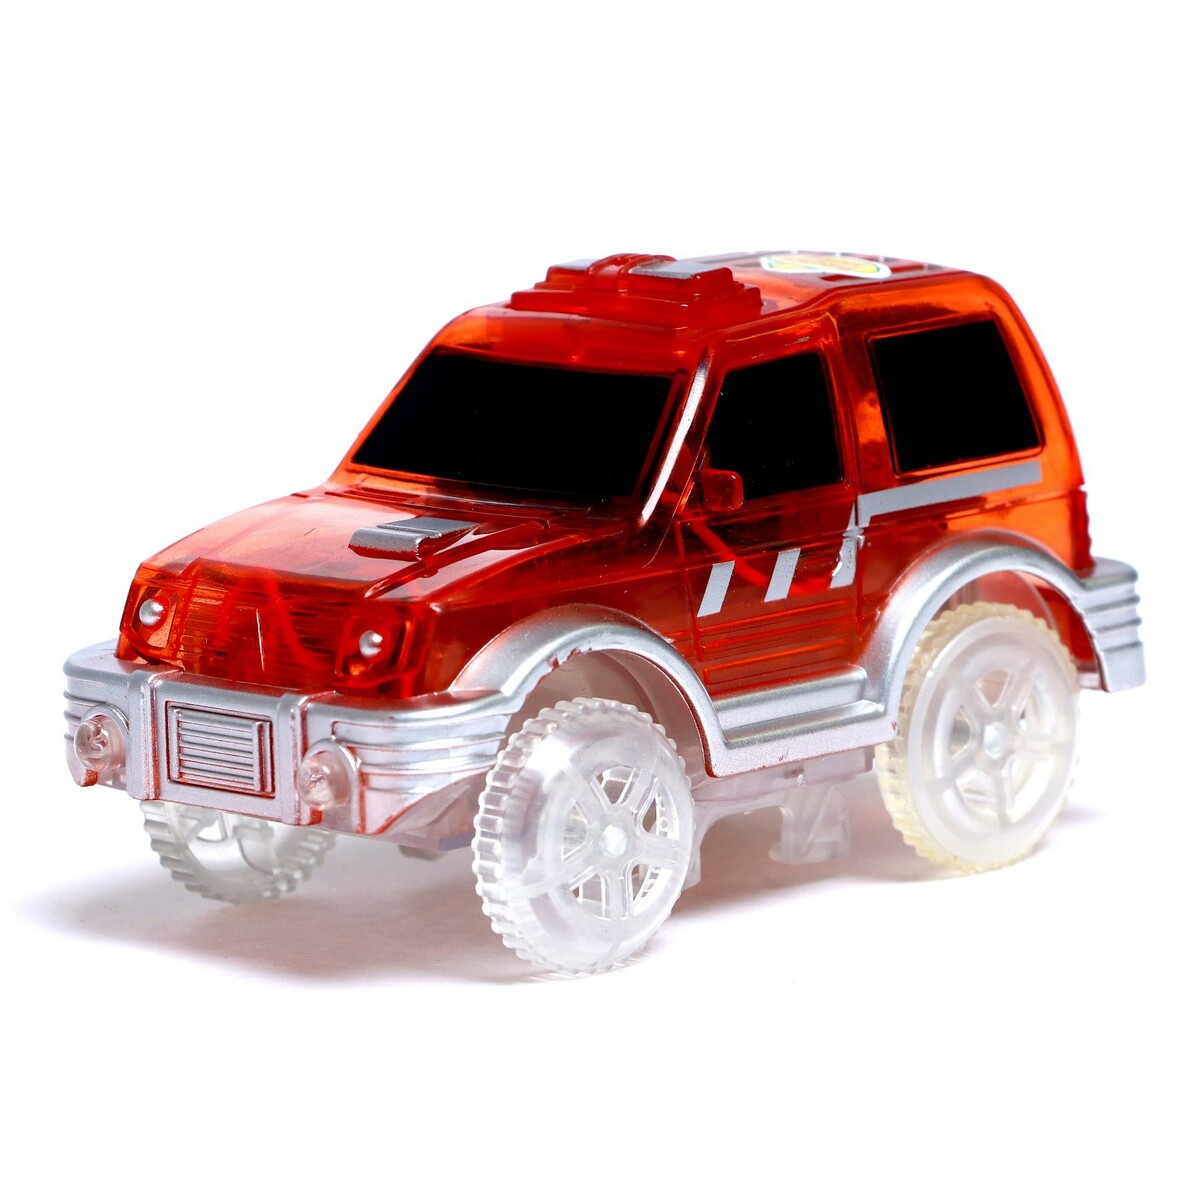 Машинка для гибкого трека magic tracks, с зацепами для петли, цвет красный радиоуправляемая машинка wl toys monster truck l313 красный